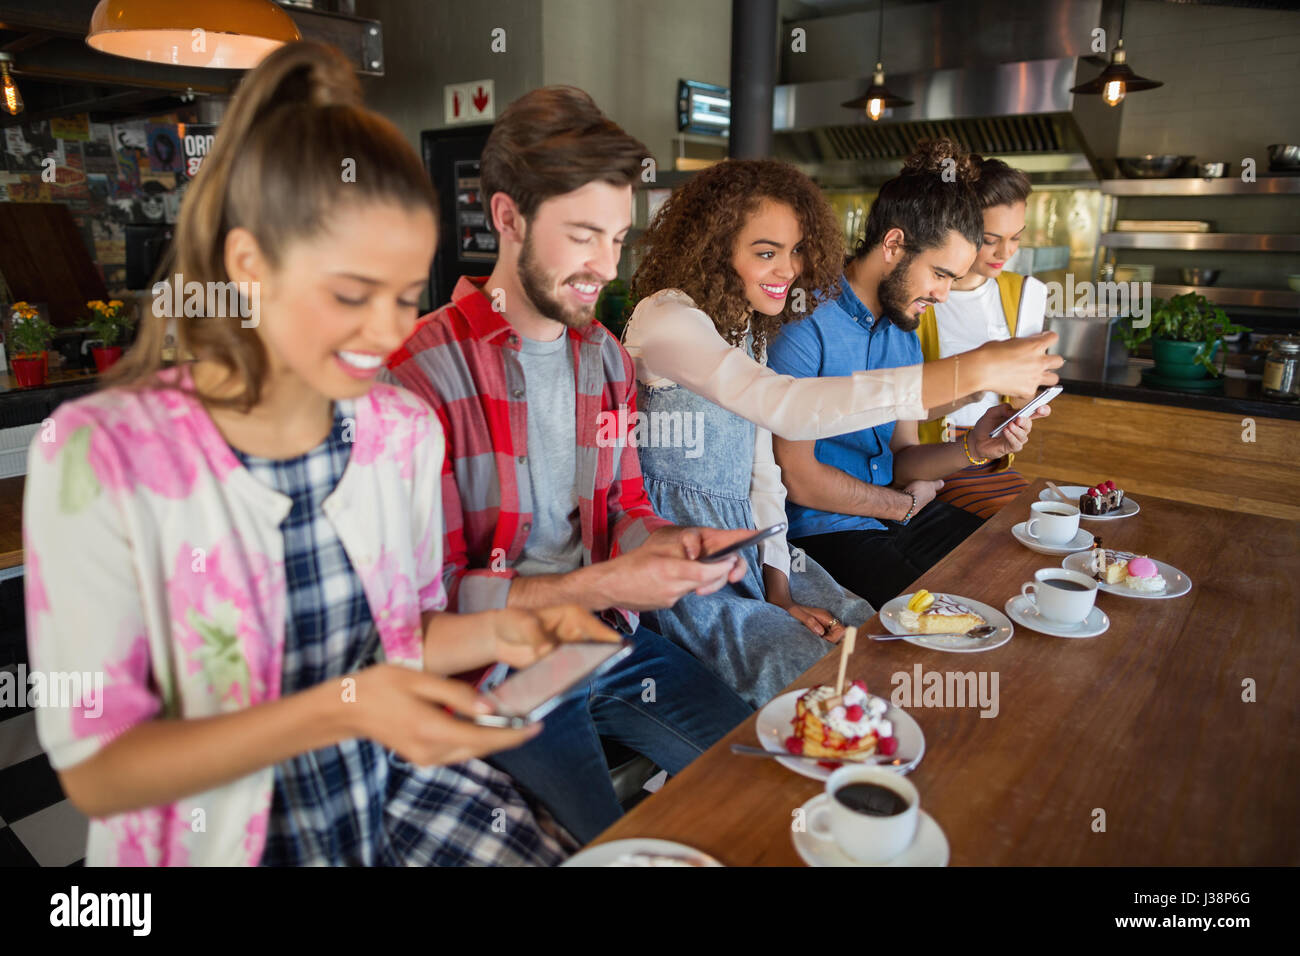 Smiling friends en utilisant leur téléphone mobile en position assise par les tasses de café et desserts sur la table in restaurant Banque D'Images